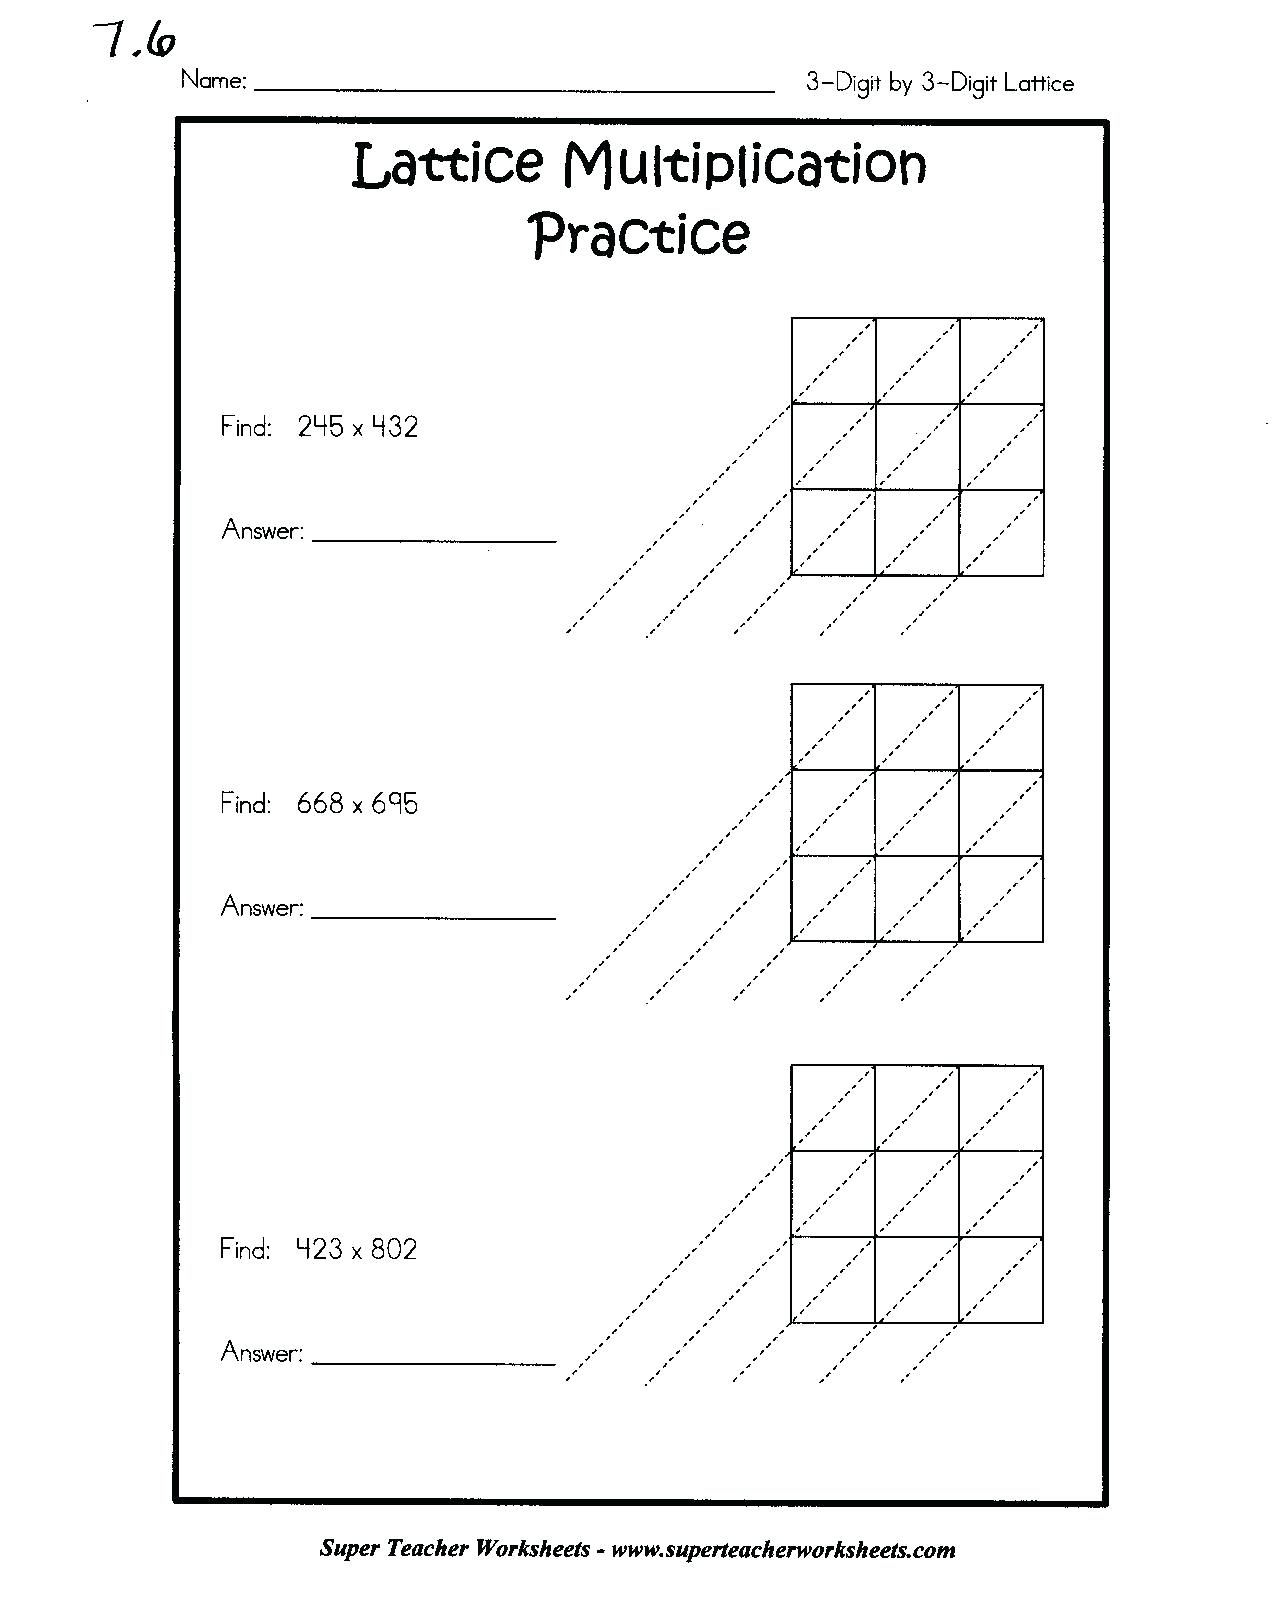 Lattice Method Of Multiplication Worksheets Pdf